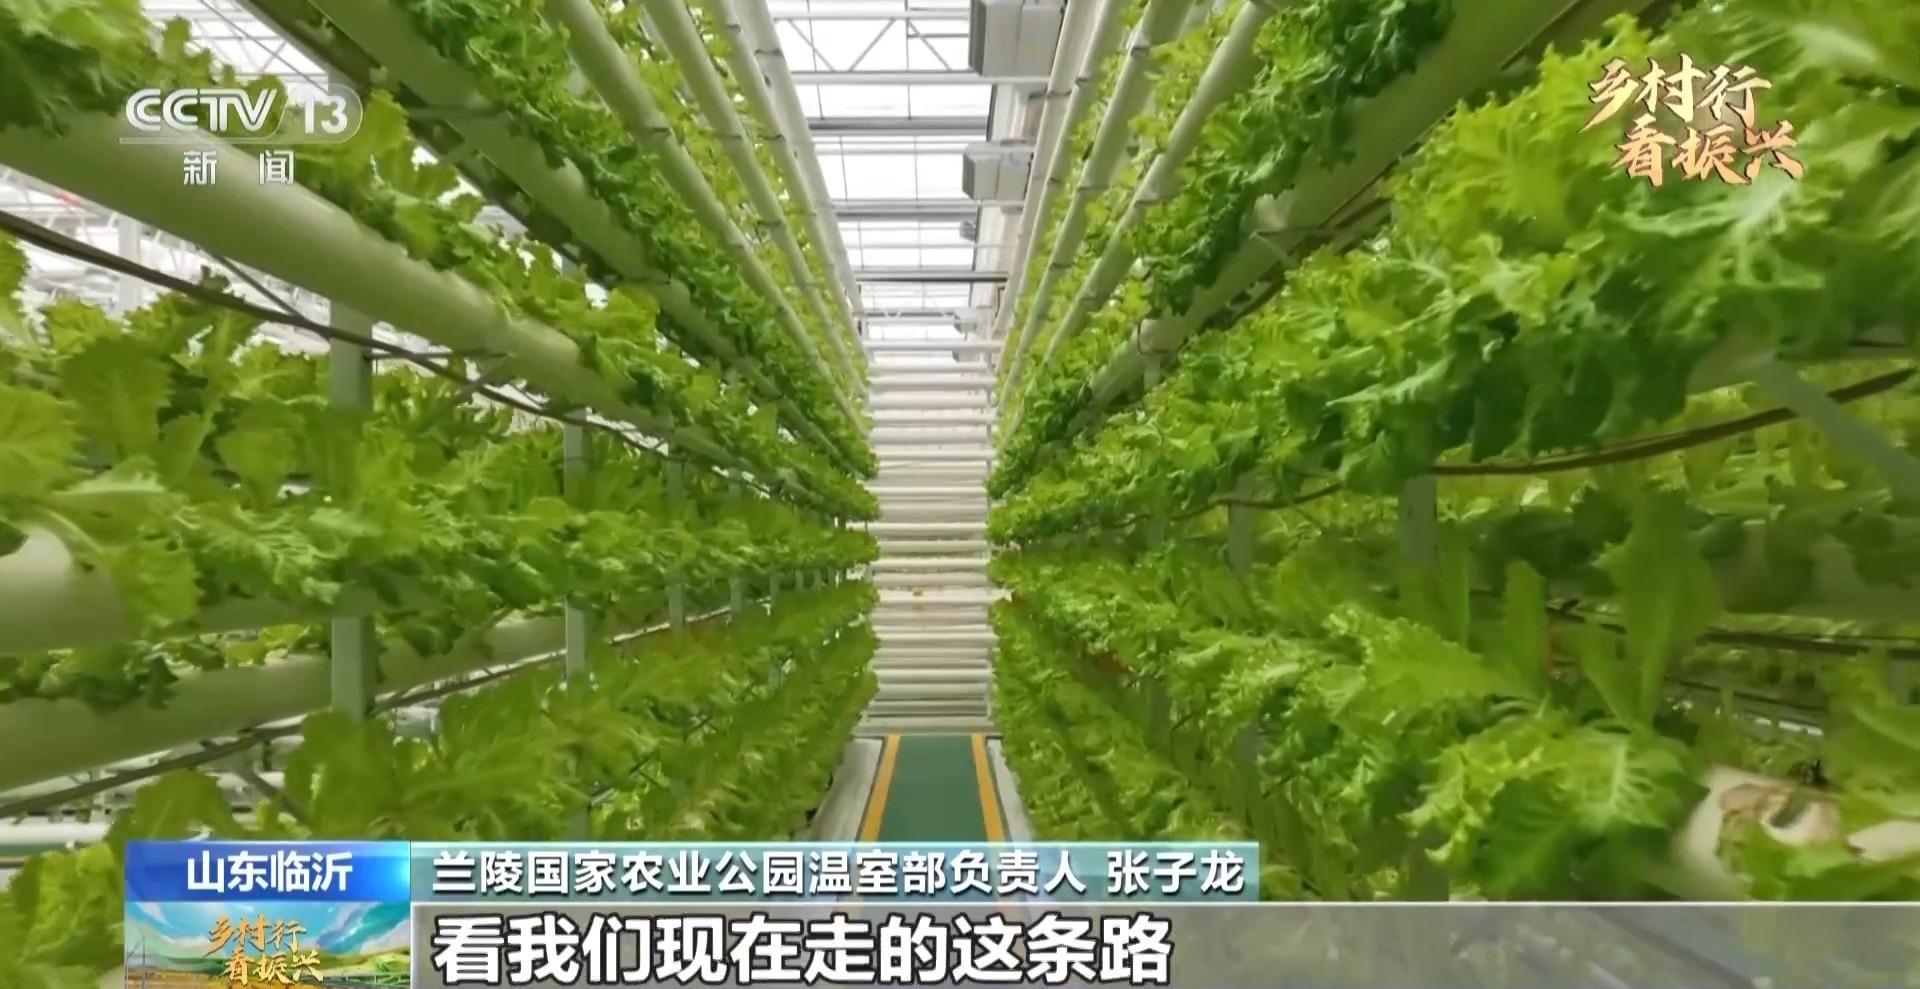 蔬菜大棚如何变身“超级工厂”?记者带你逛蔬菜村